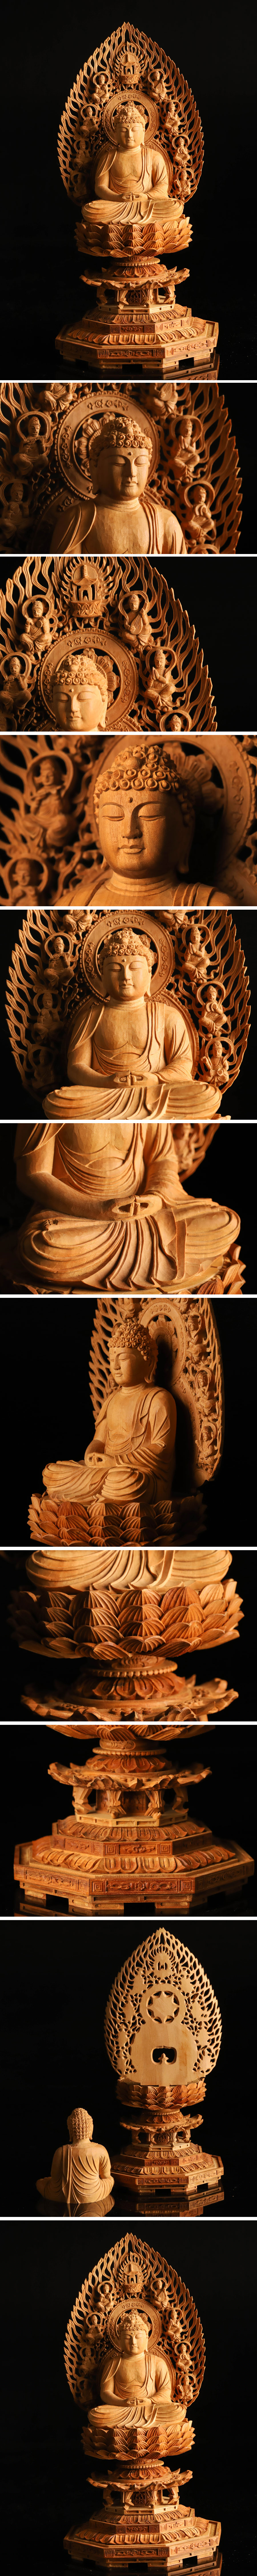 【生産停止】仏教美術 白檀 木彫仏像 座像 重量794g KH412 その他